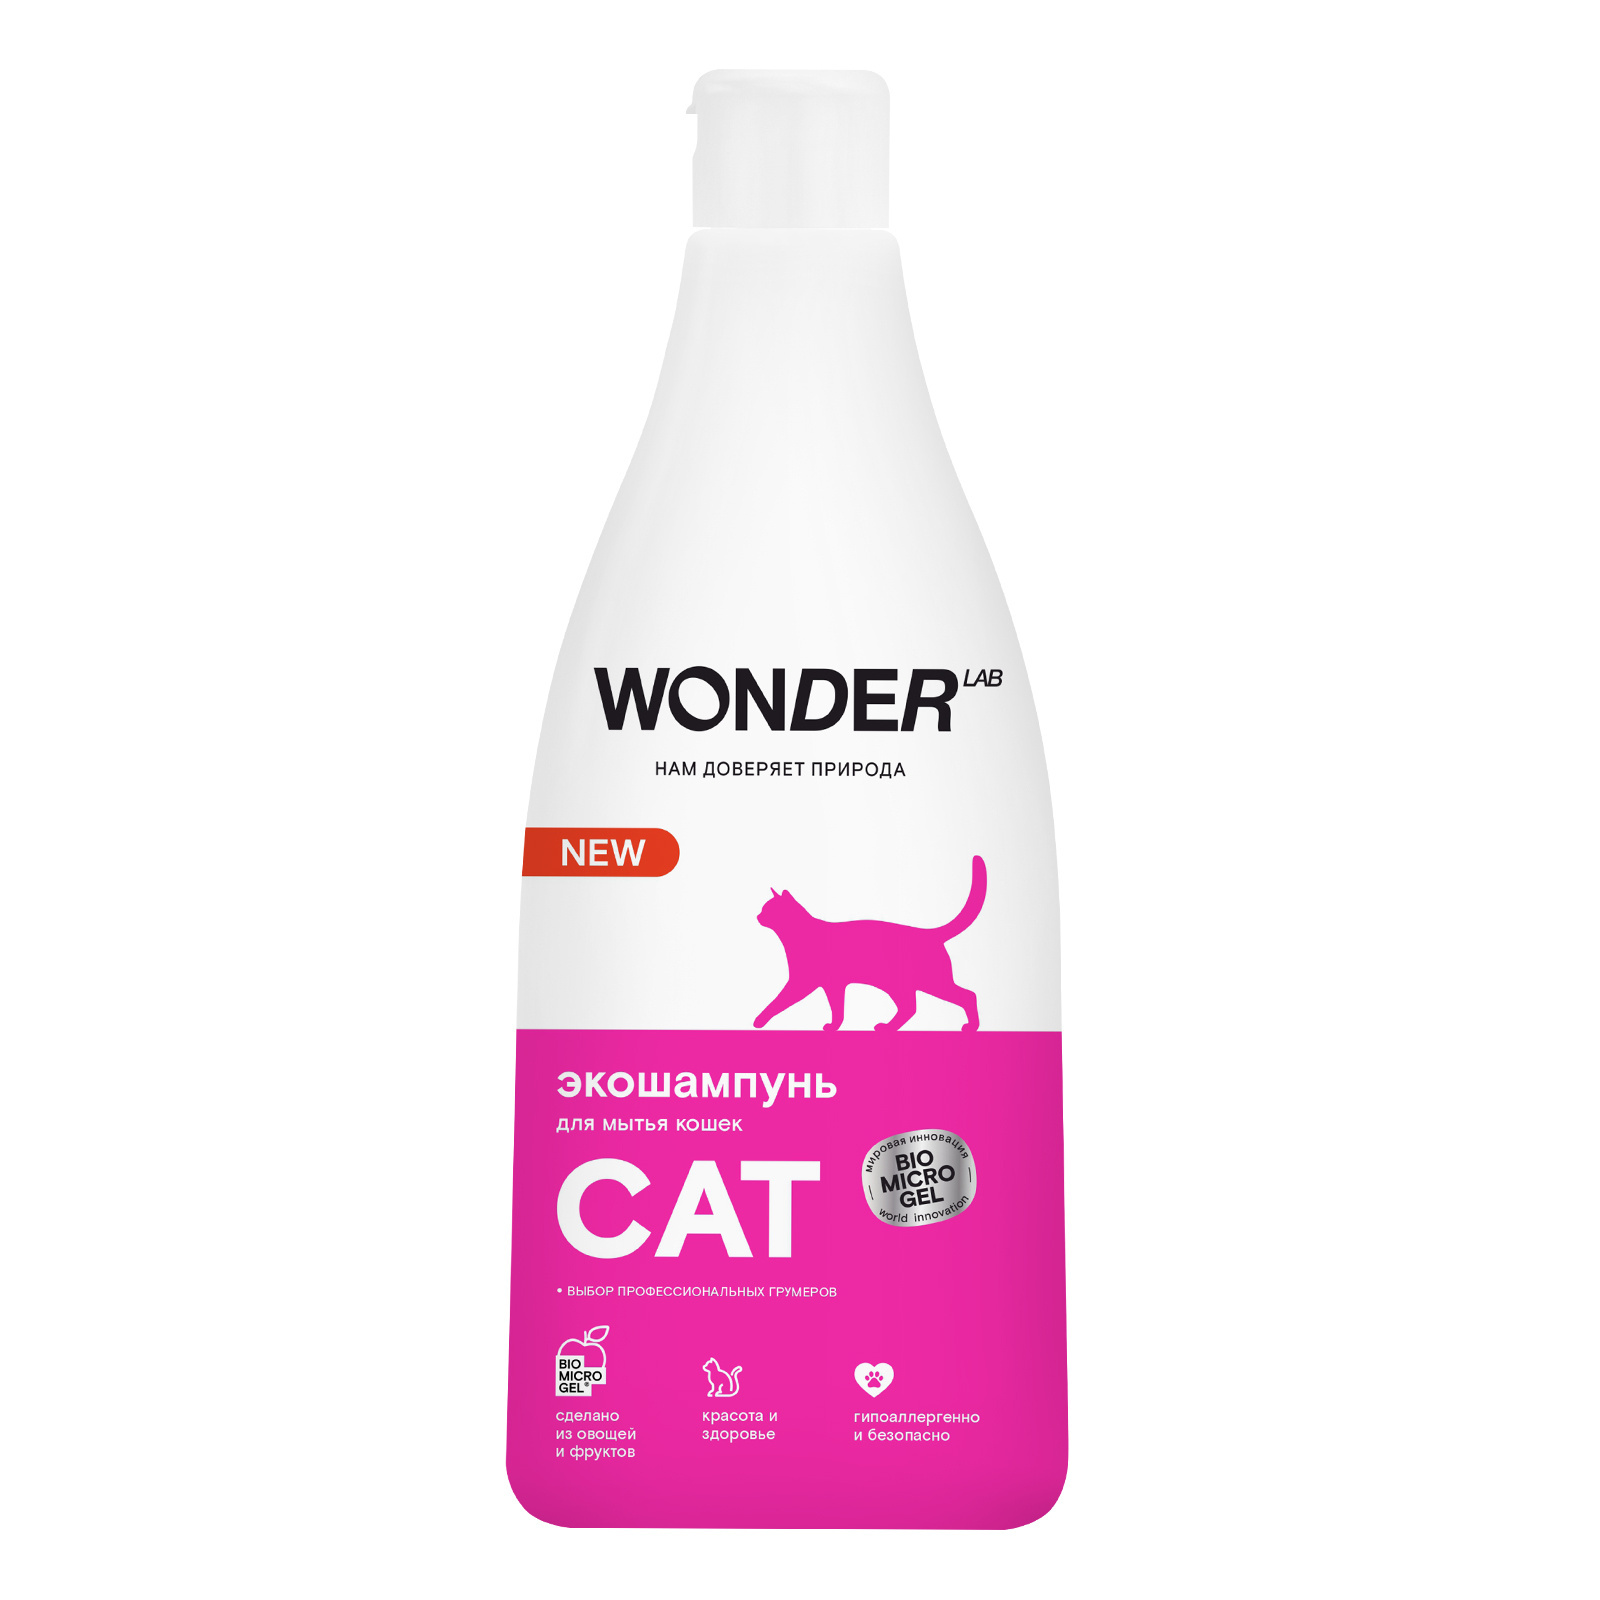 Wonder lab экошампунь для мытья кошек (550 г) Wonder lab экошампунь для мытья кошек (550 г) - фото 1